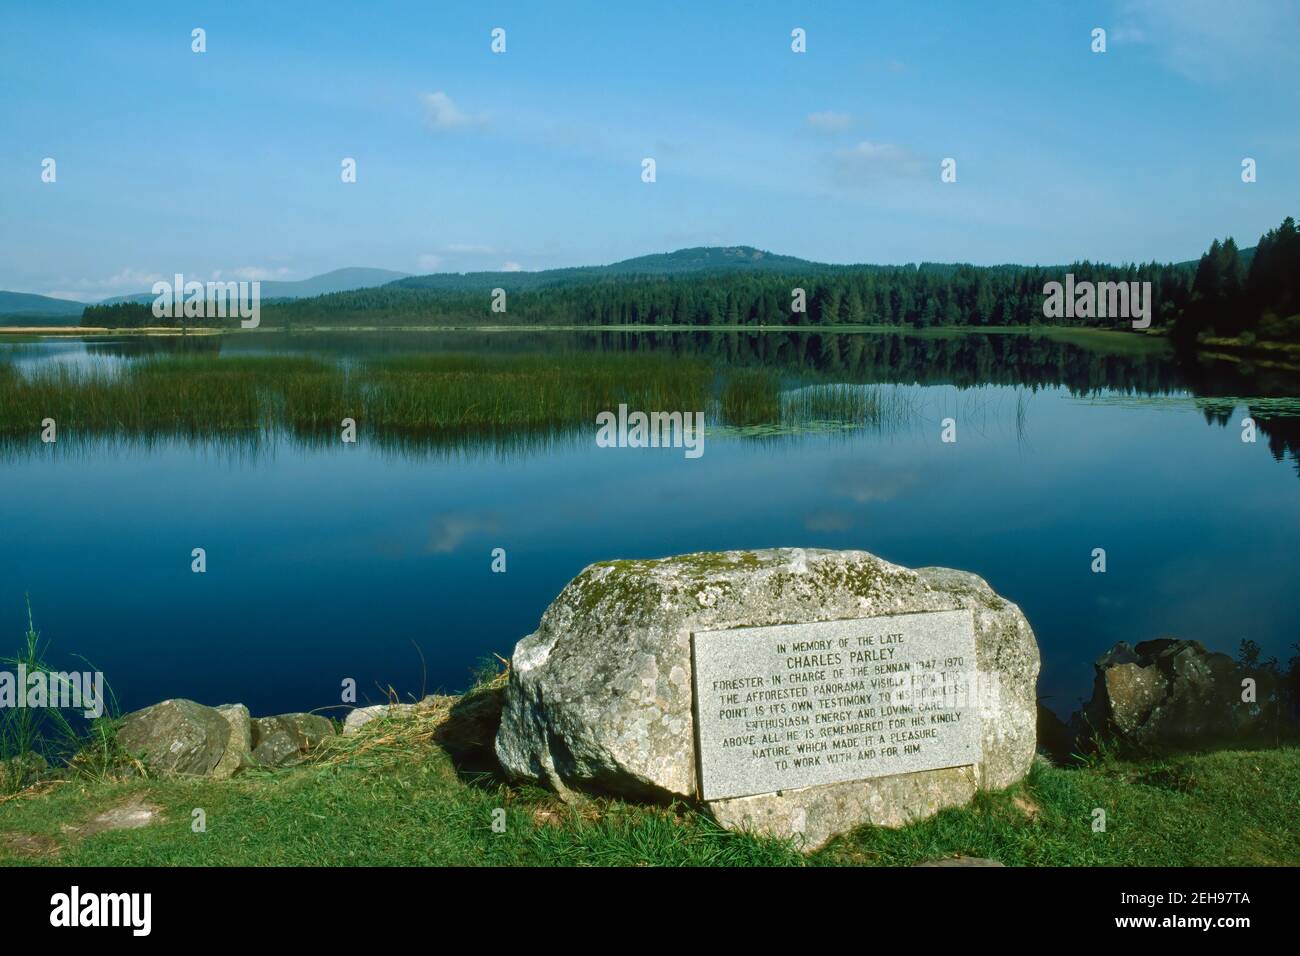 La pierre commémorative Charles Parley à Stroan loch dans le Galloway Forest Park Ecosse Banque D'Images